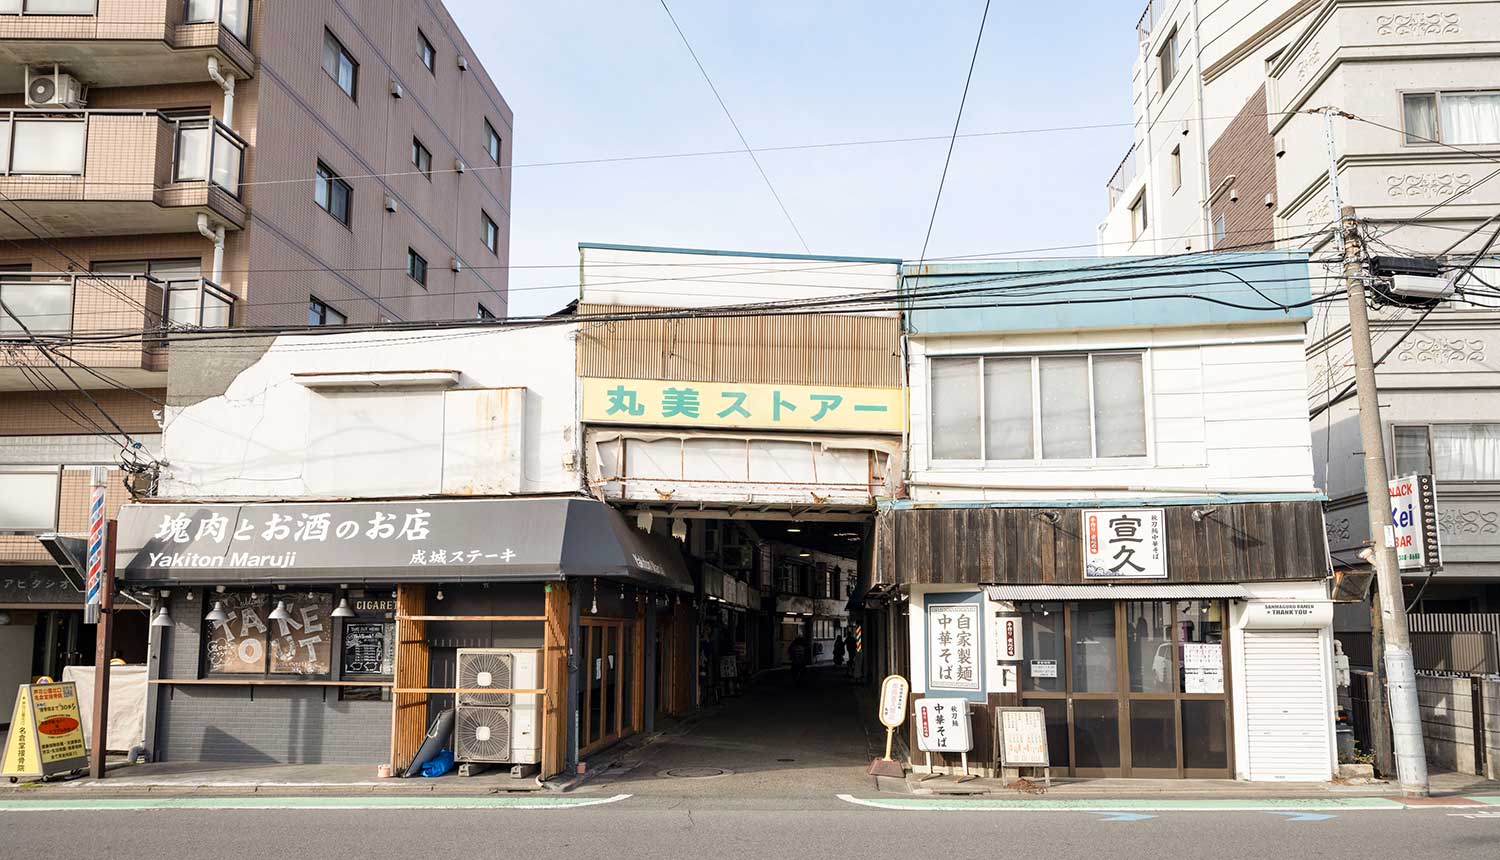 マンションに挟まれたアーケード街「丸美ストアー」。色濃く昭和の風情が残る。